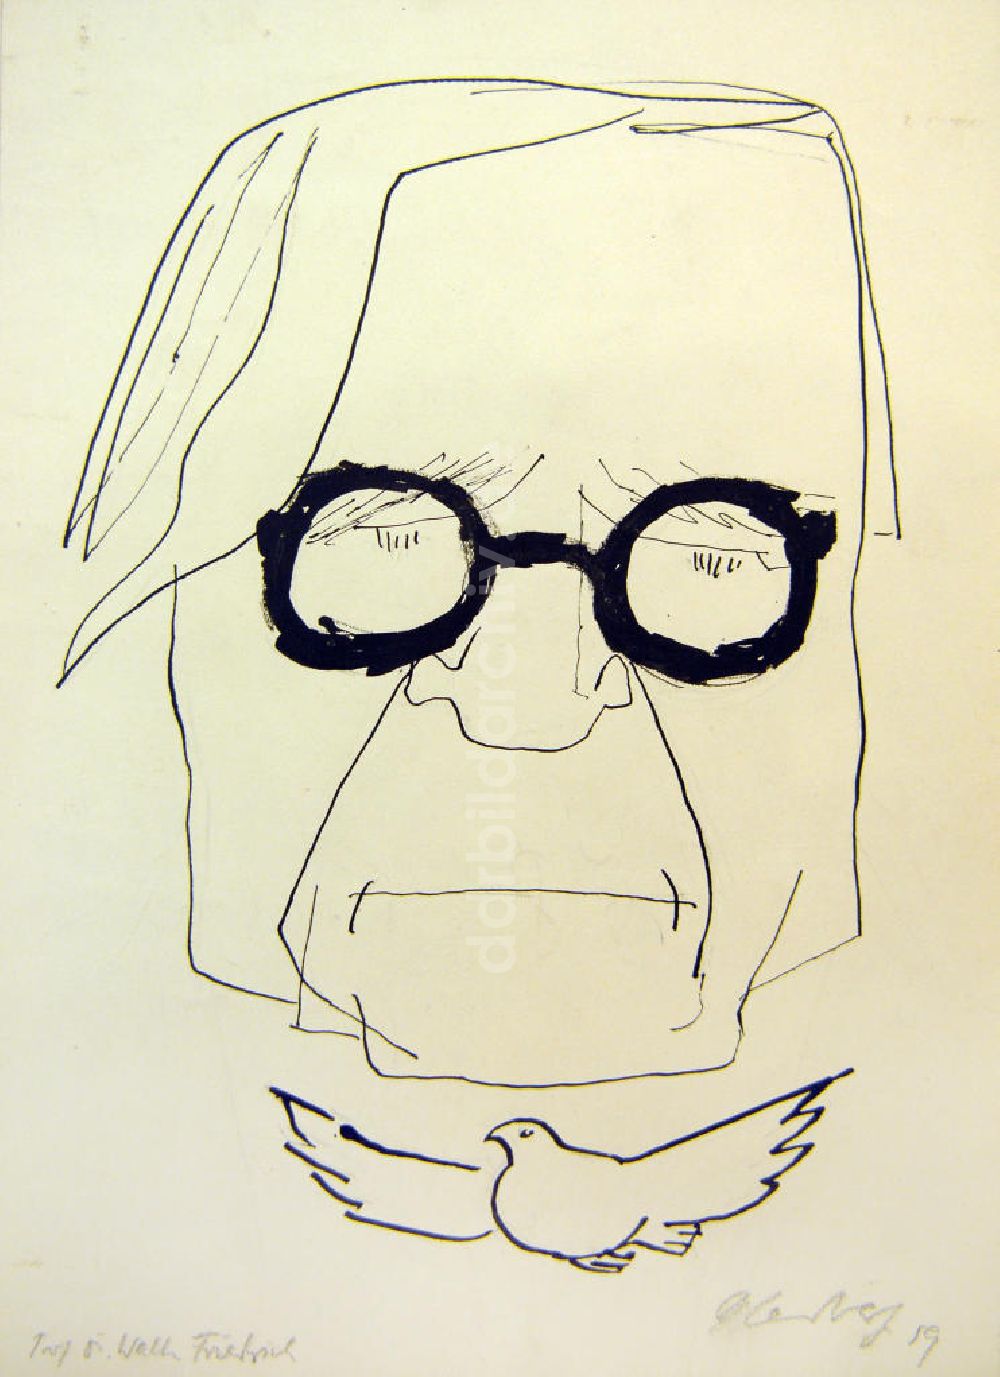 DDR-Bildarchiv: Berlin - Zeichnung von Herbert Sandberg Prof. Dr. Walter Friedrich aus dem Jahr 1959